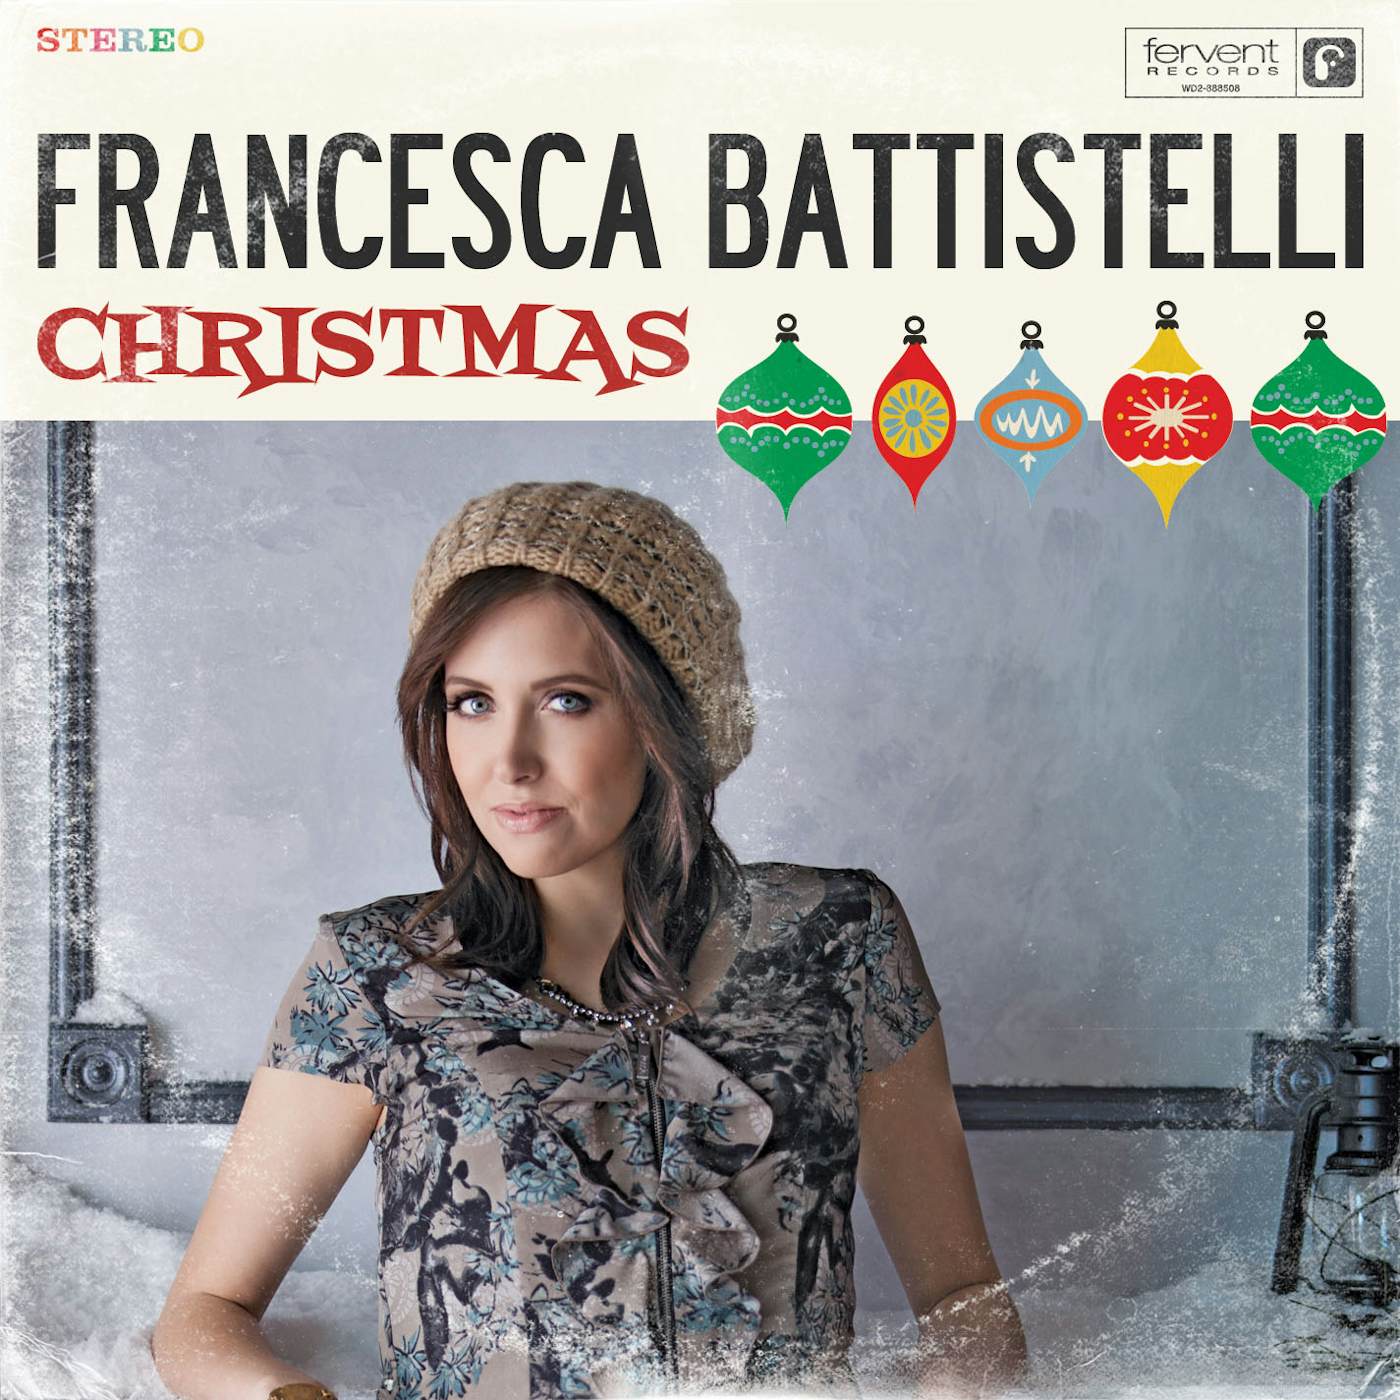 Francesca Battistelli Christmas Vinyl Record